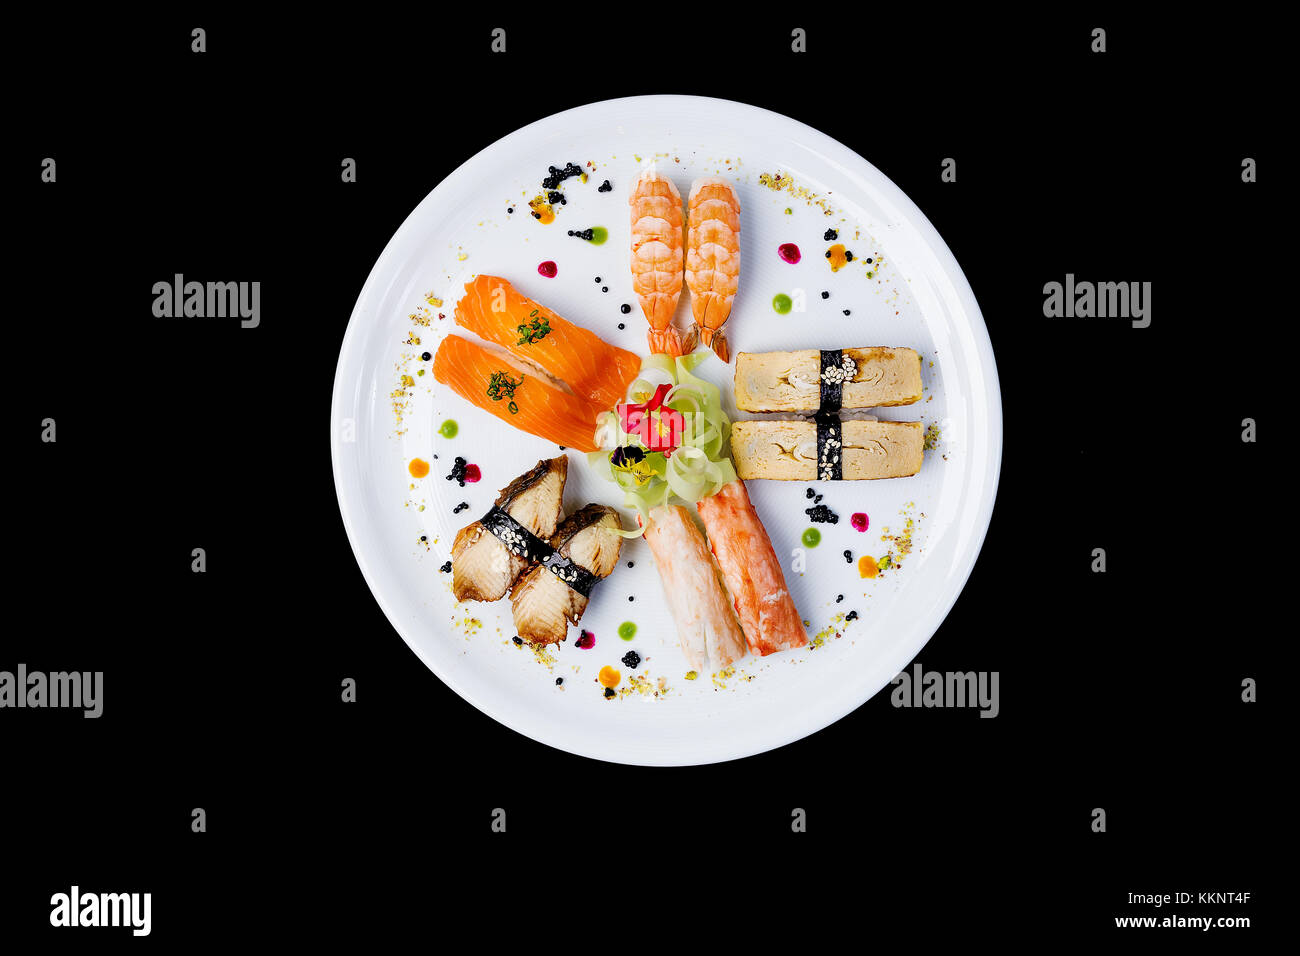 Sashimi impostato su un bianco piastra rotonda, decorata con piccoli fiori, il cibo giapponese. vista dall'alto. isolata su uno sfondo nero Foto Stock